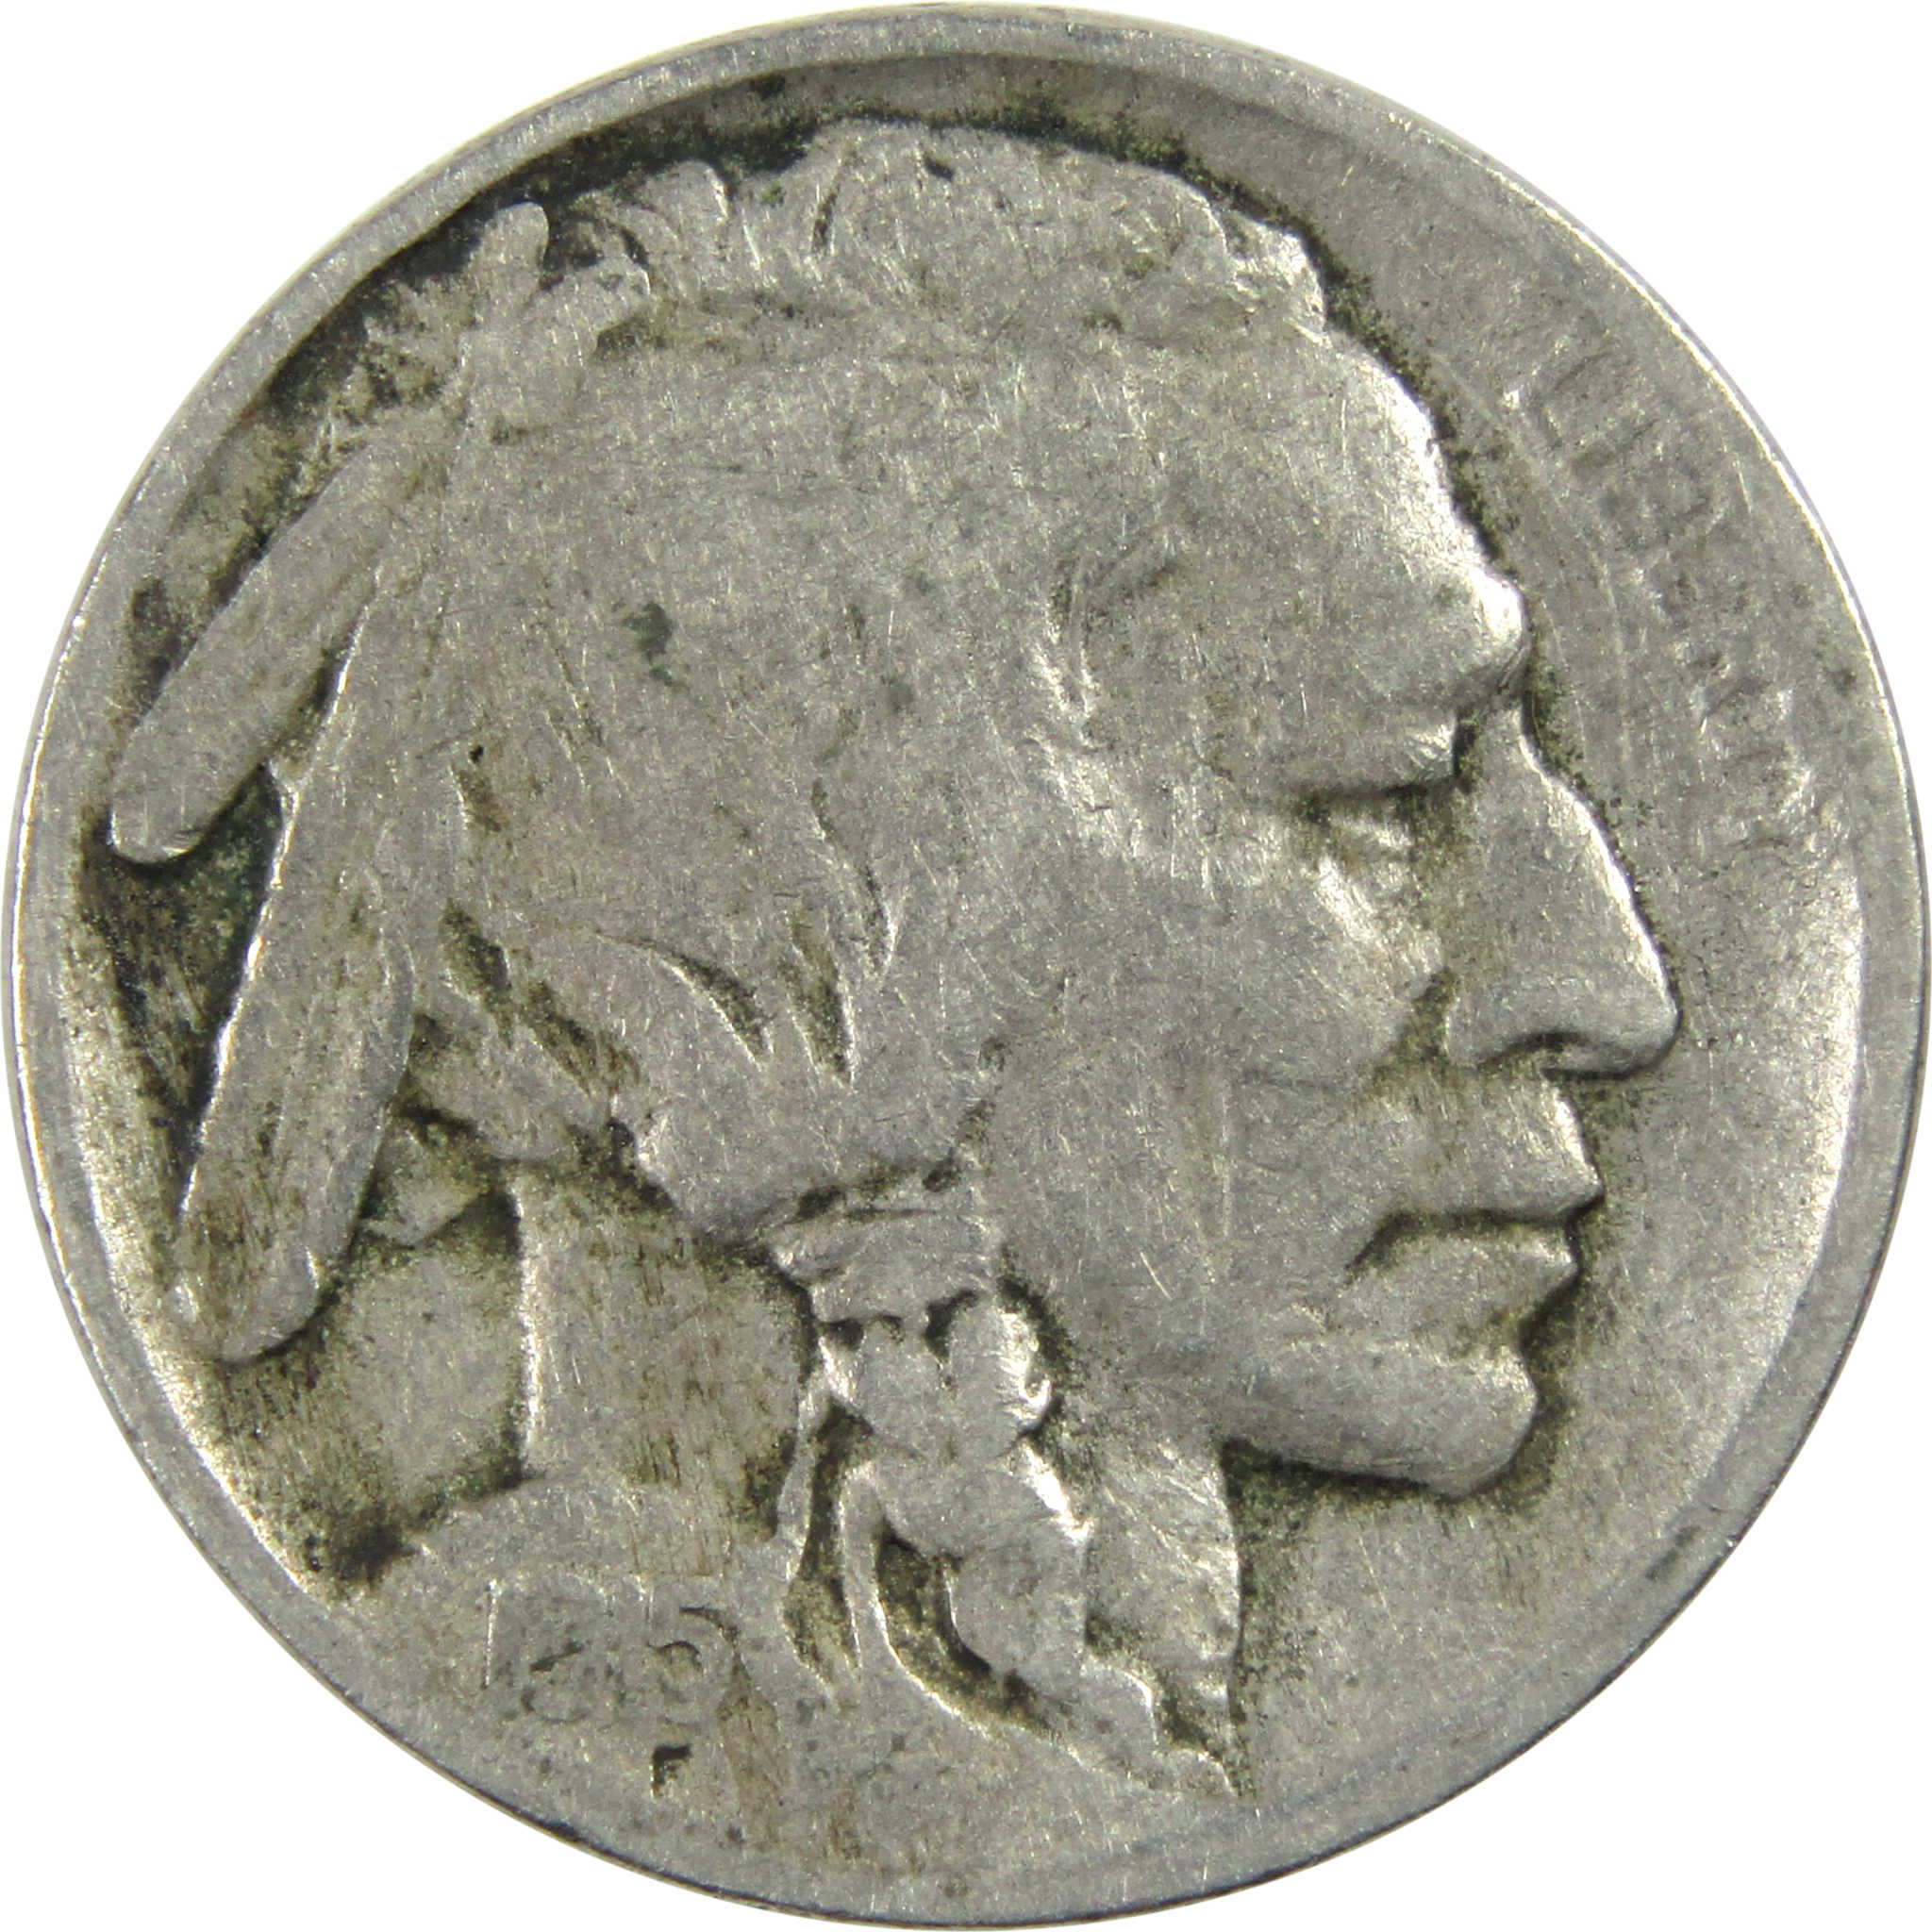 1915 Indian Head Buffalo Nickel VG Very Good 5c Coin SKU:I12978